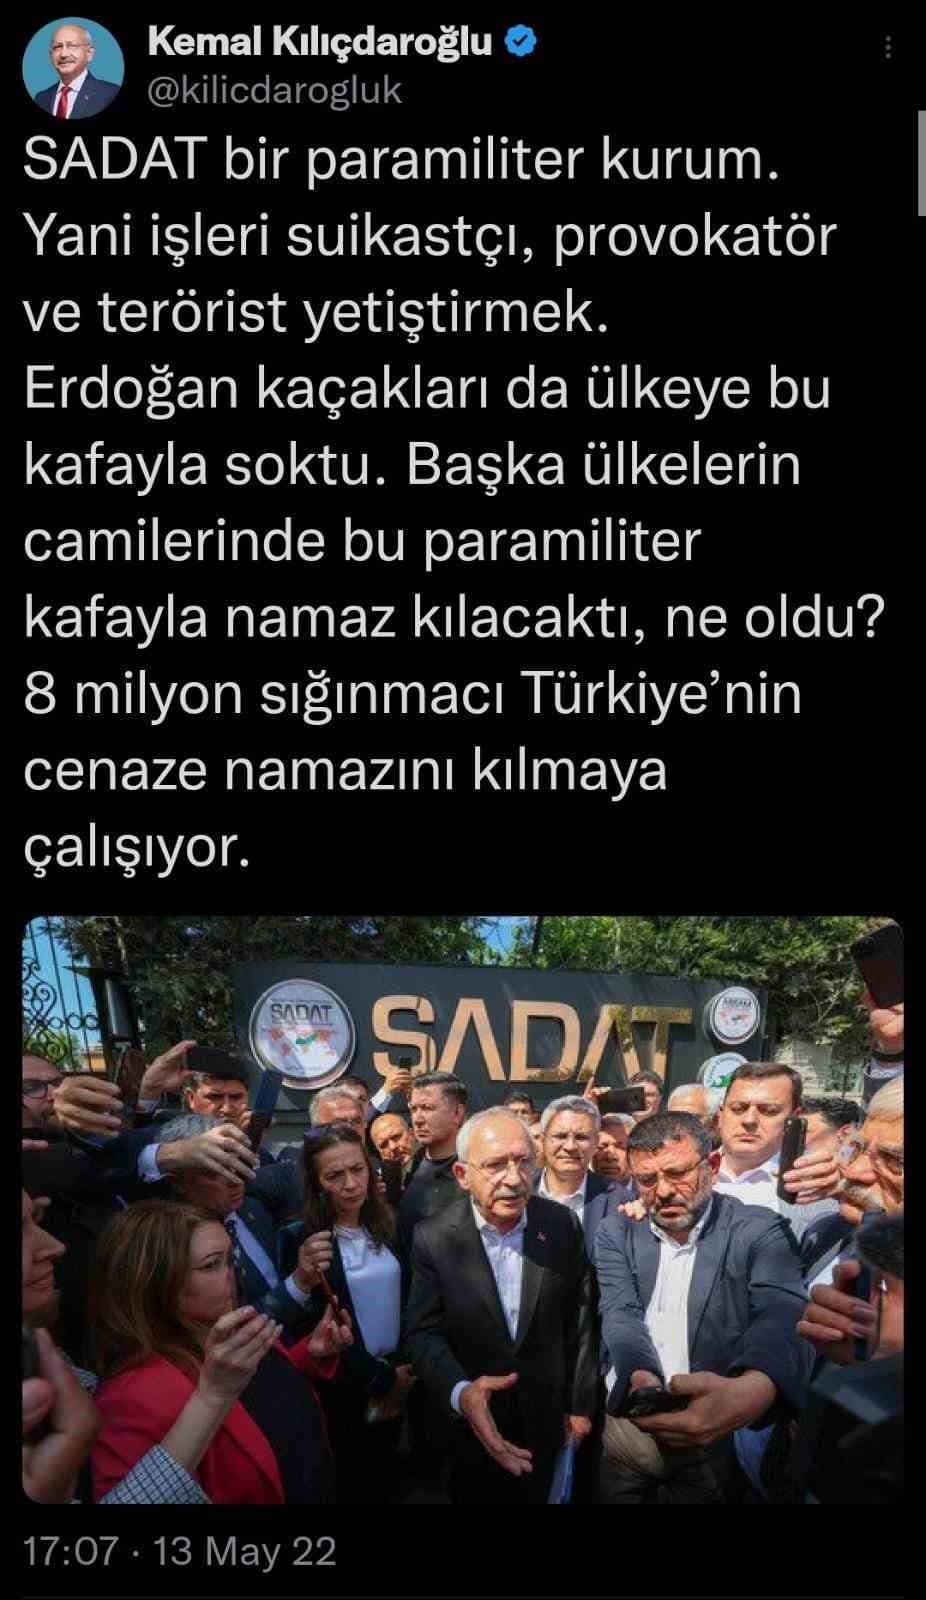 SADAT Kemal Kılıçdaroğlu’na açtığı davayı kazandı
